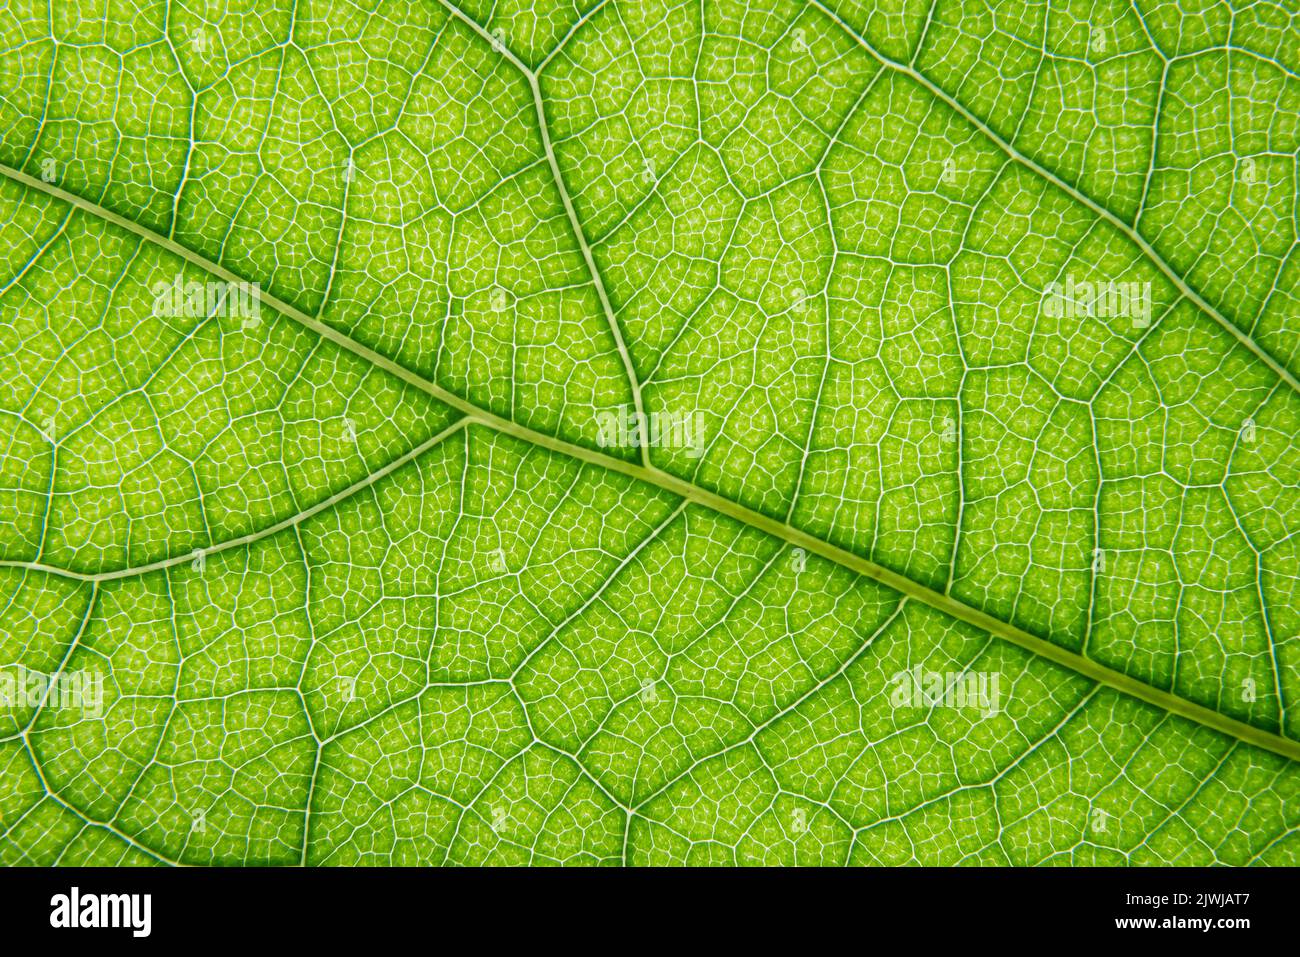 Makroaufnahme der Venenstruktur des grünen Blattes Stockfoto